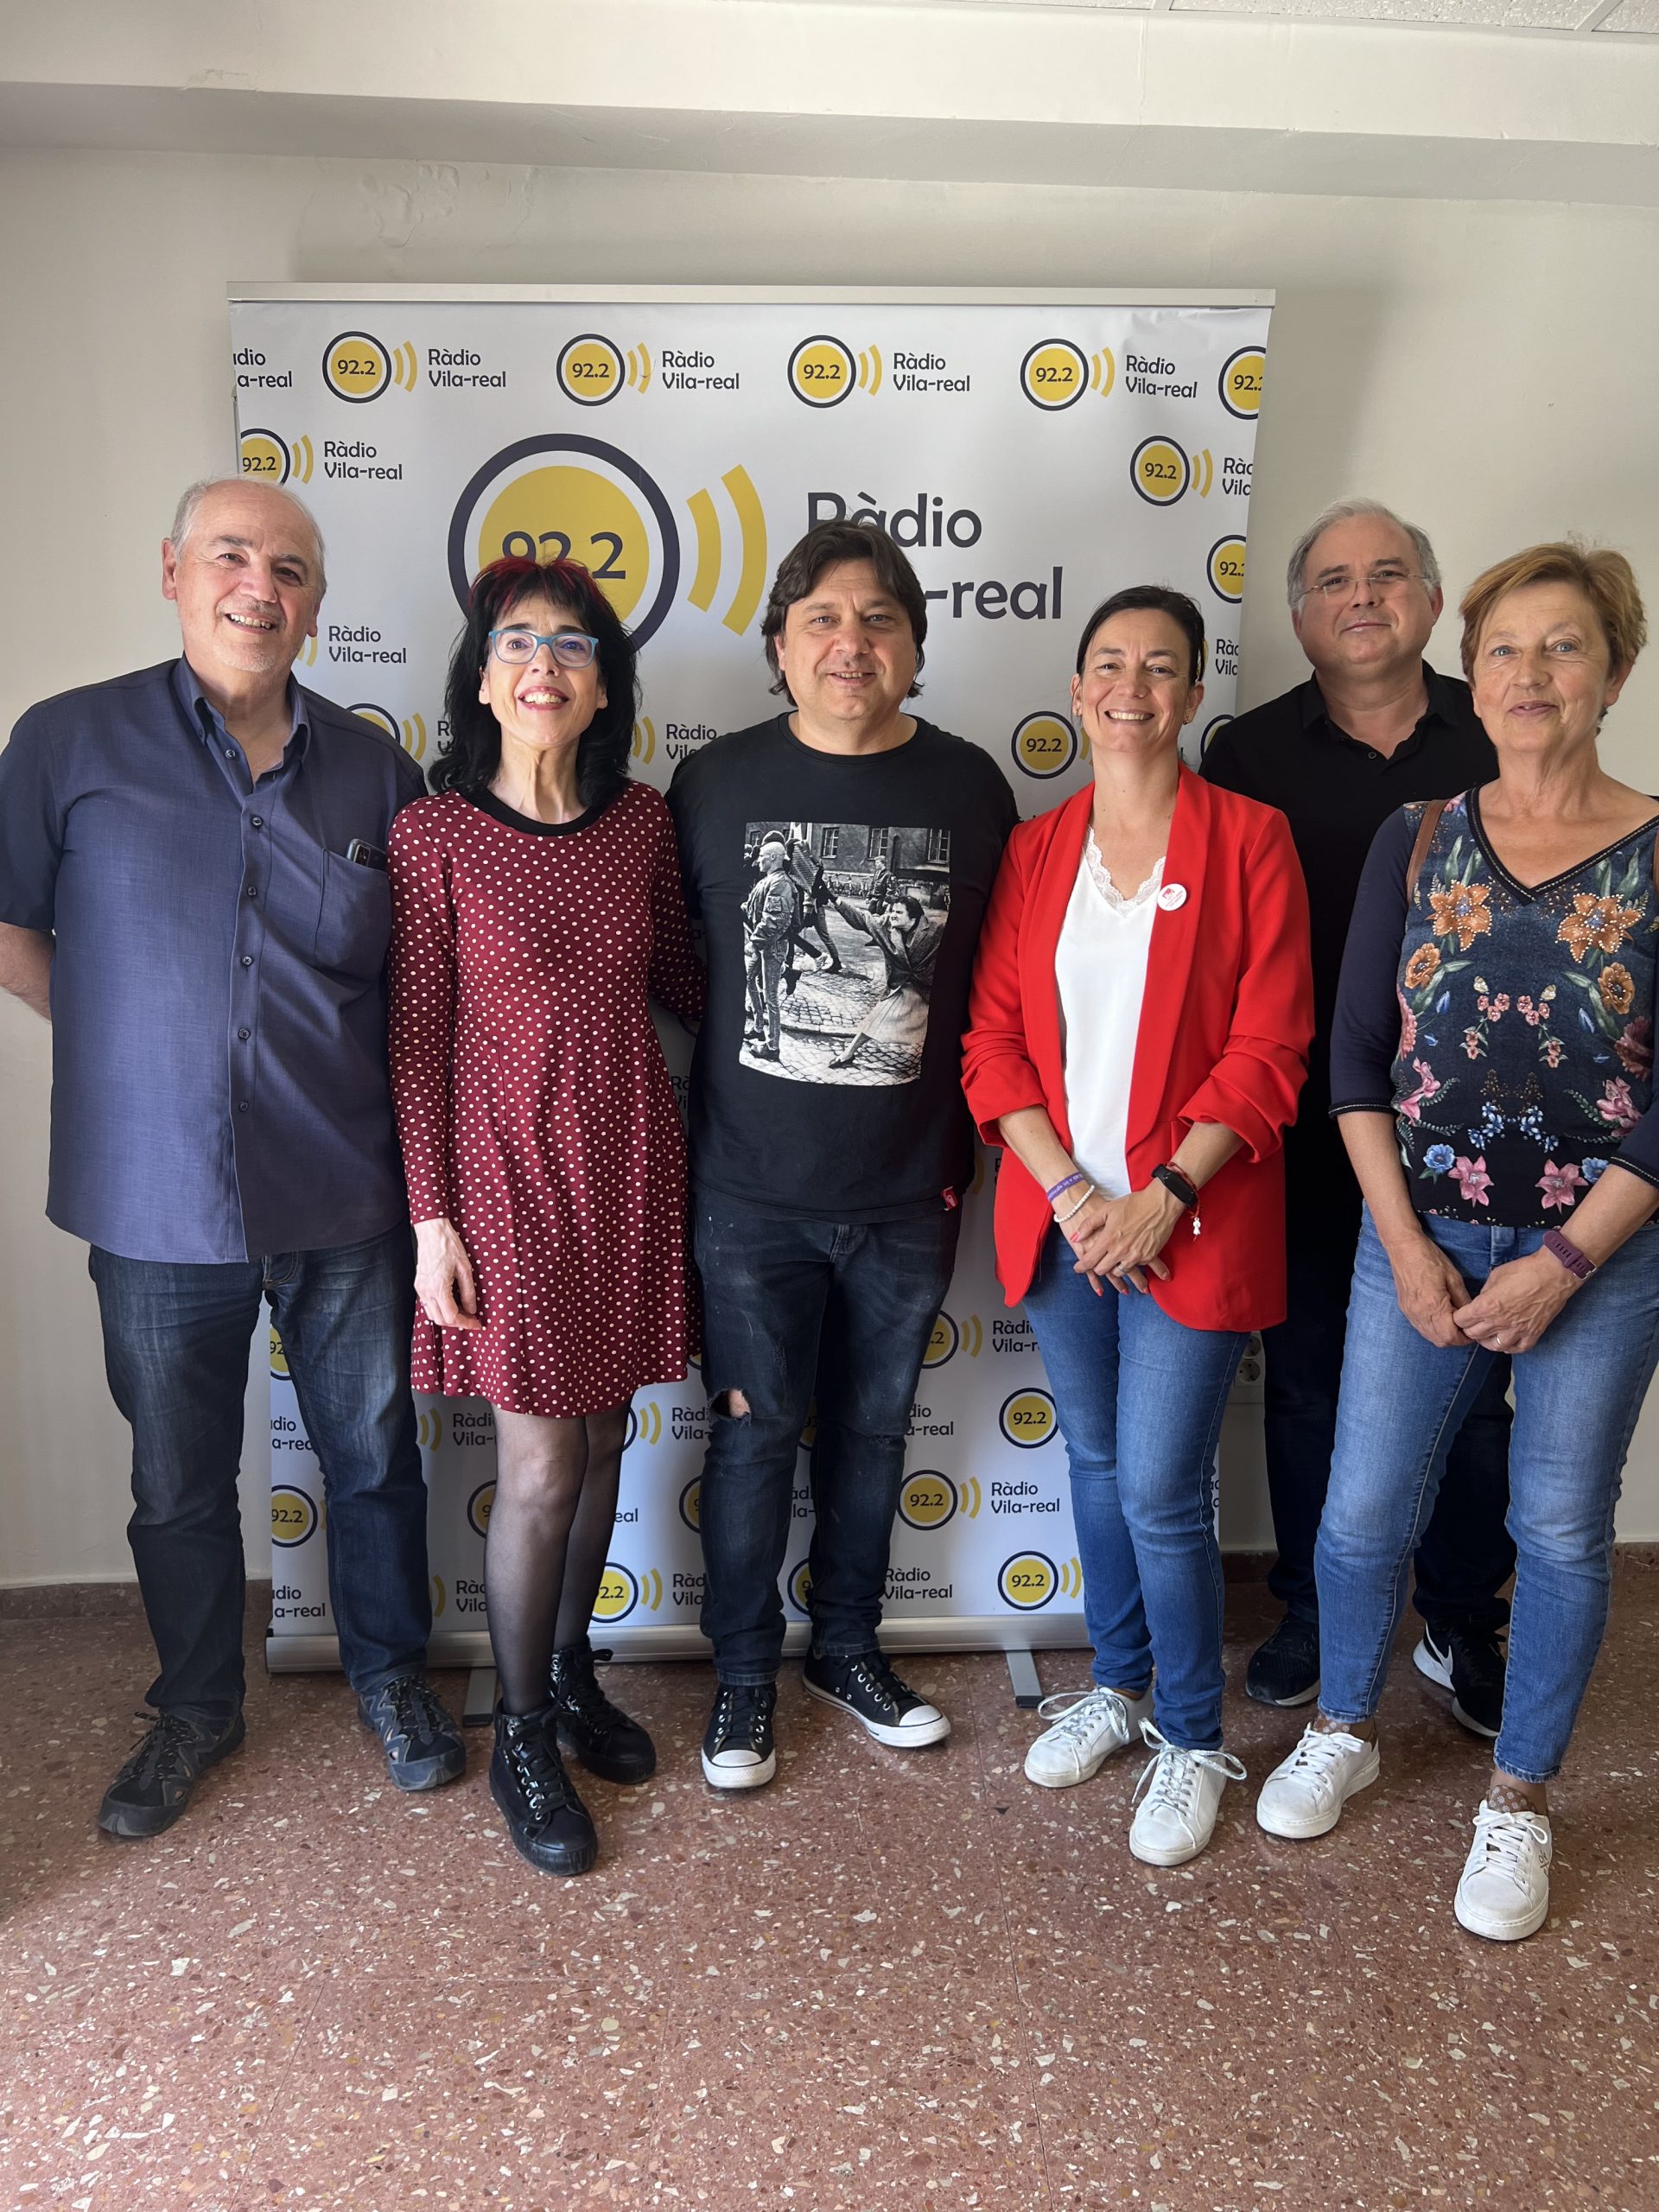 Des d’Unides Podem hui ens visiten José Ramón Ventura Chalmeta i Marisa Saavedra